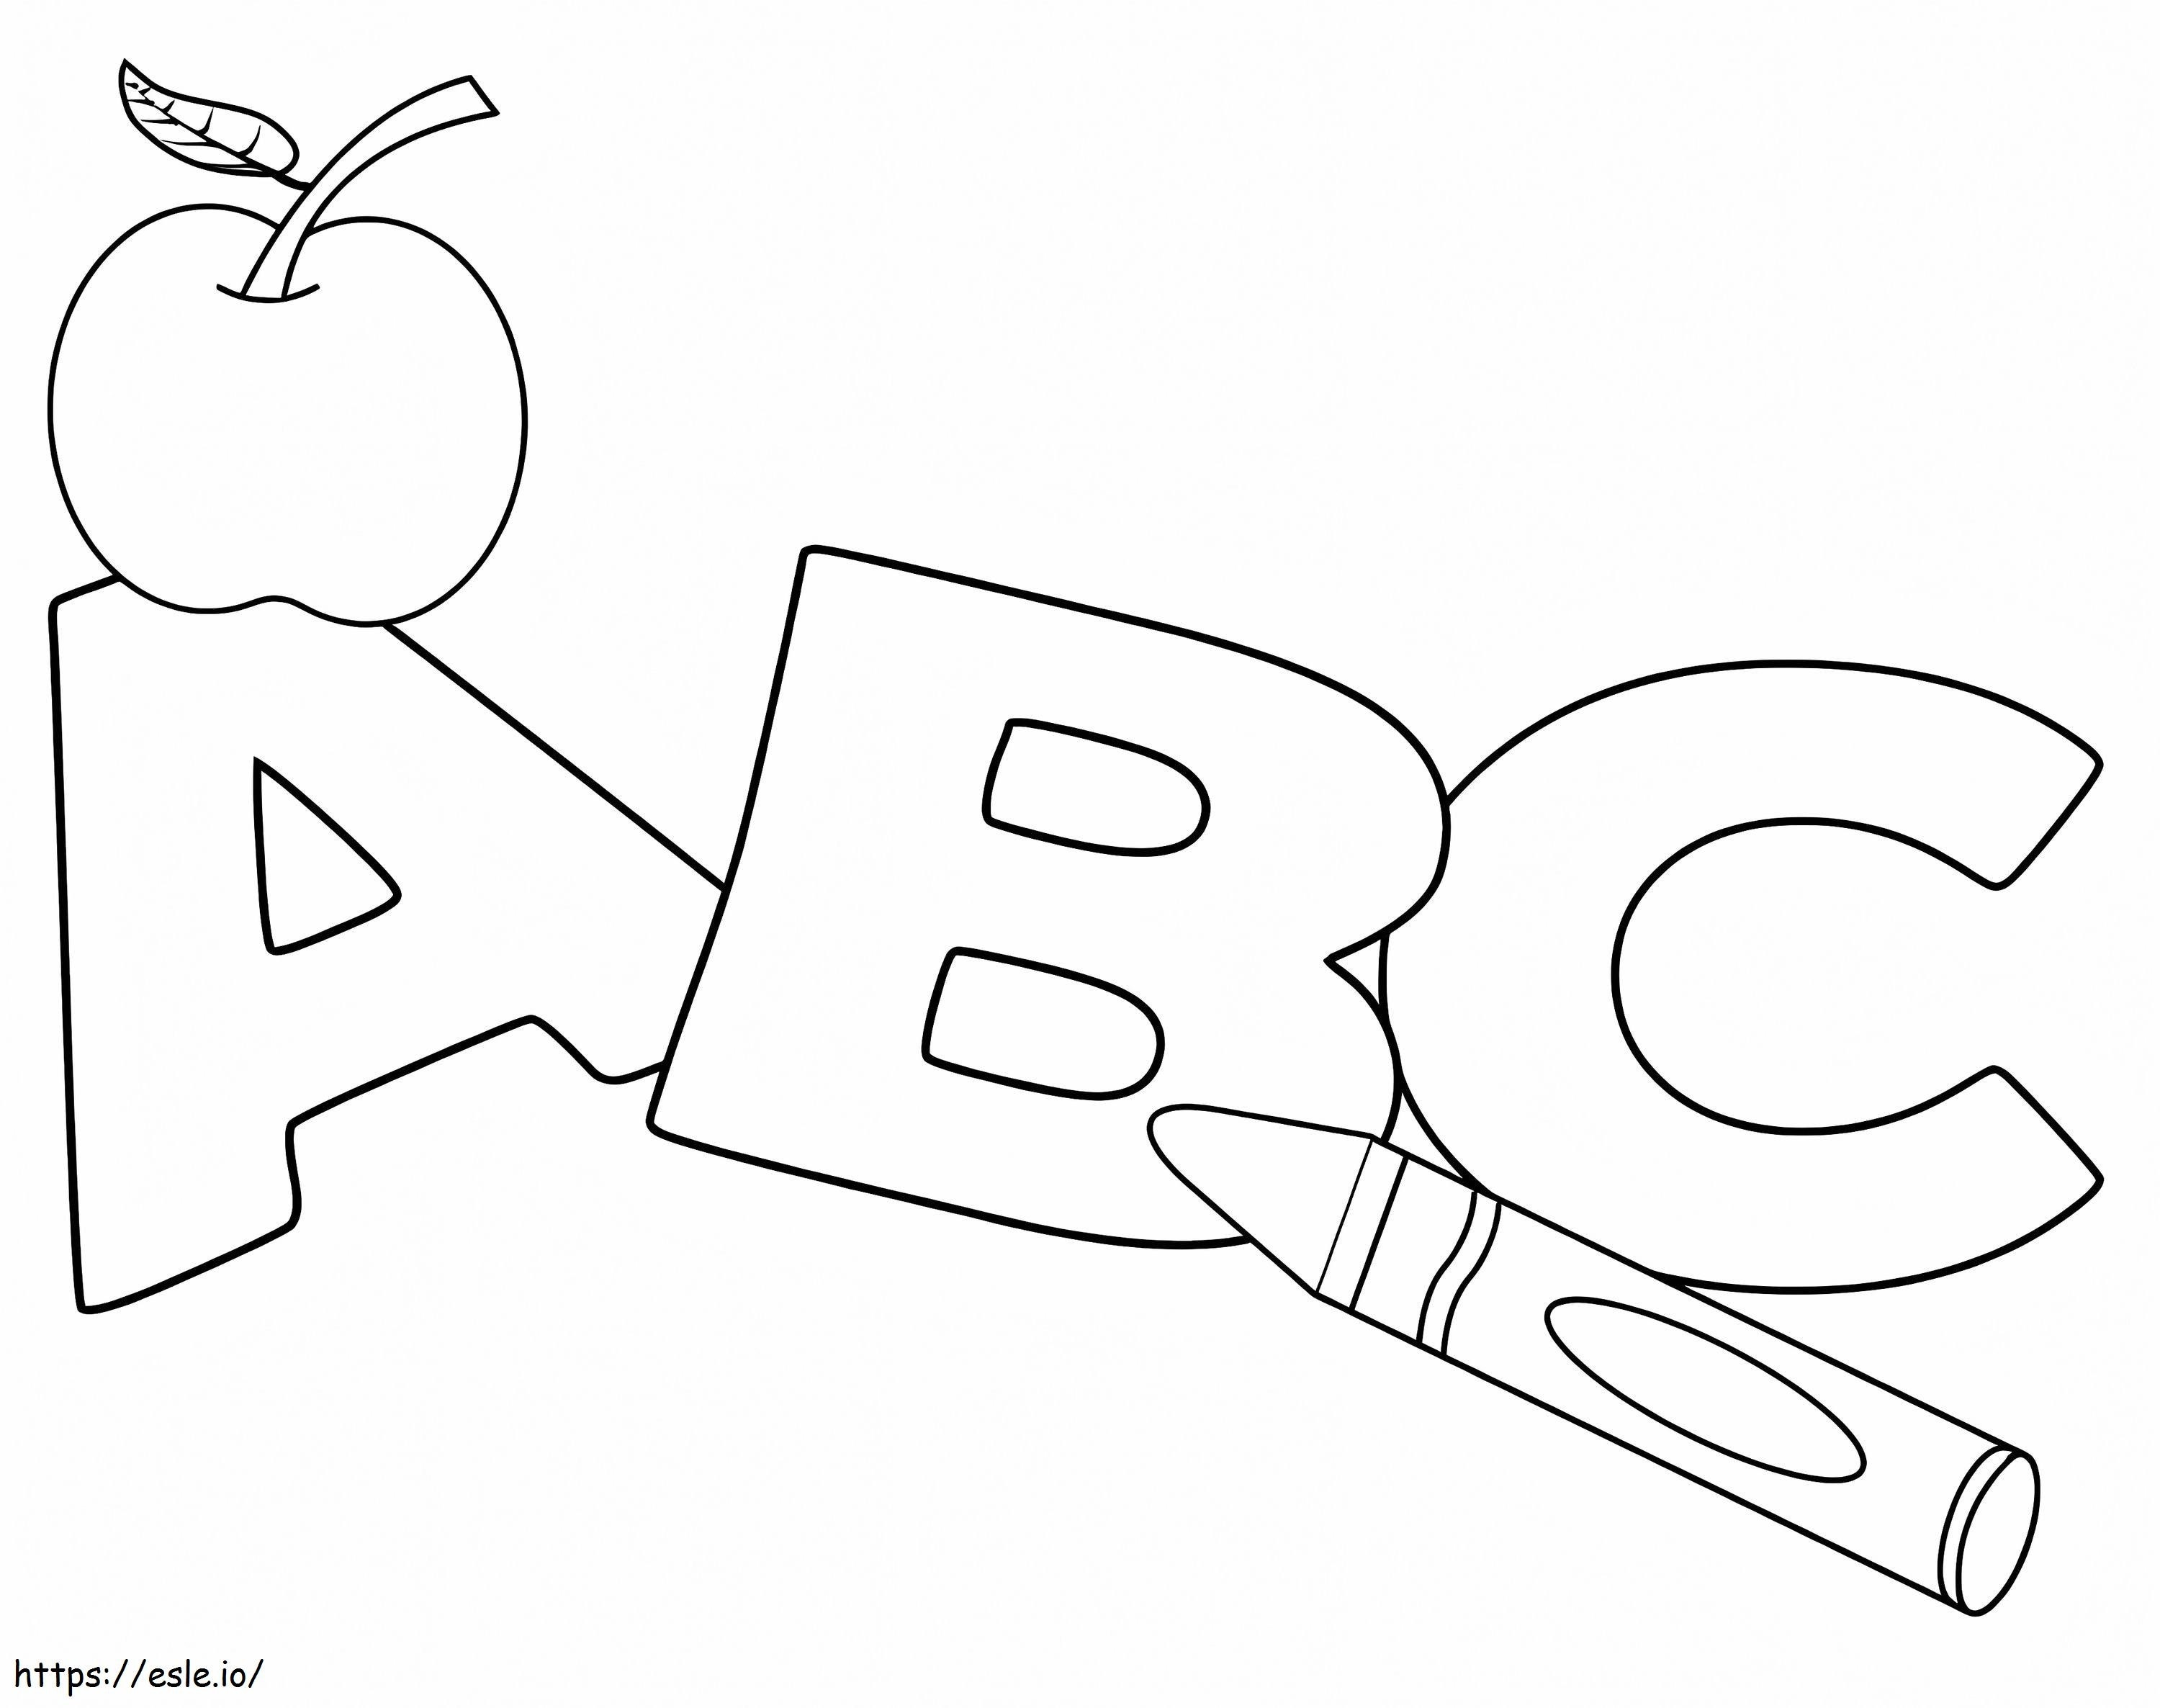 Coloriage ABC simple à imprimer dessin